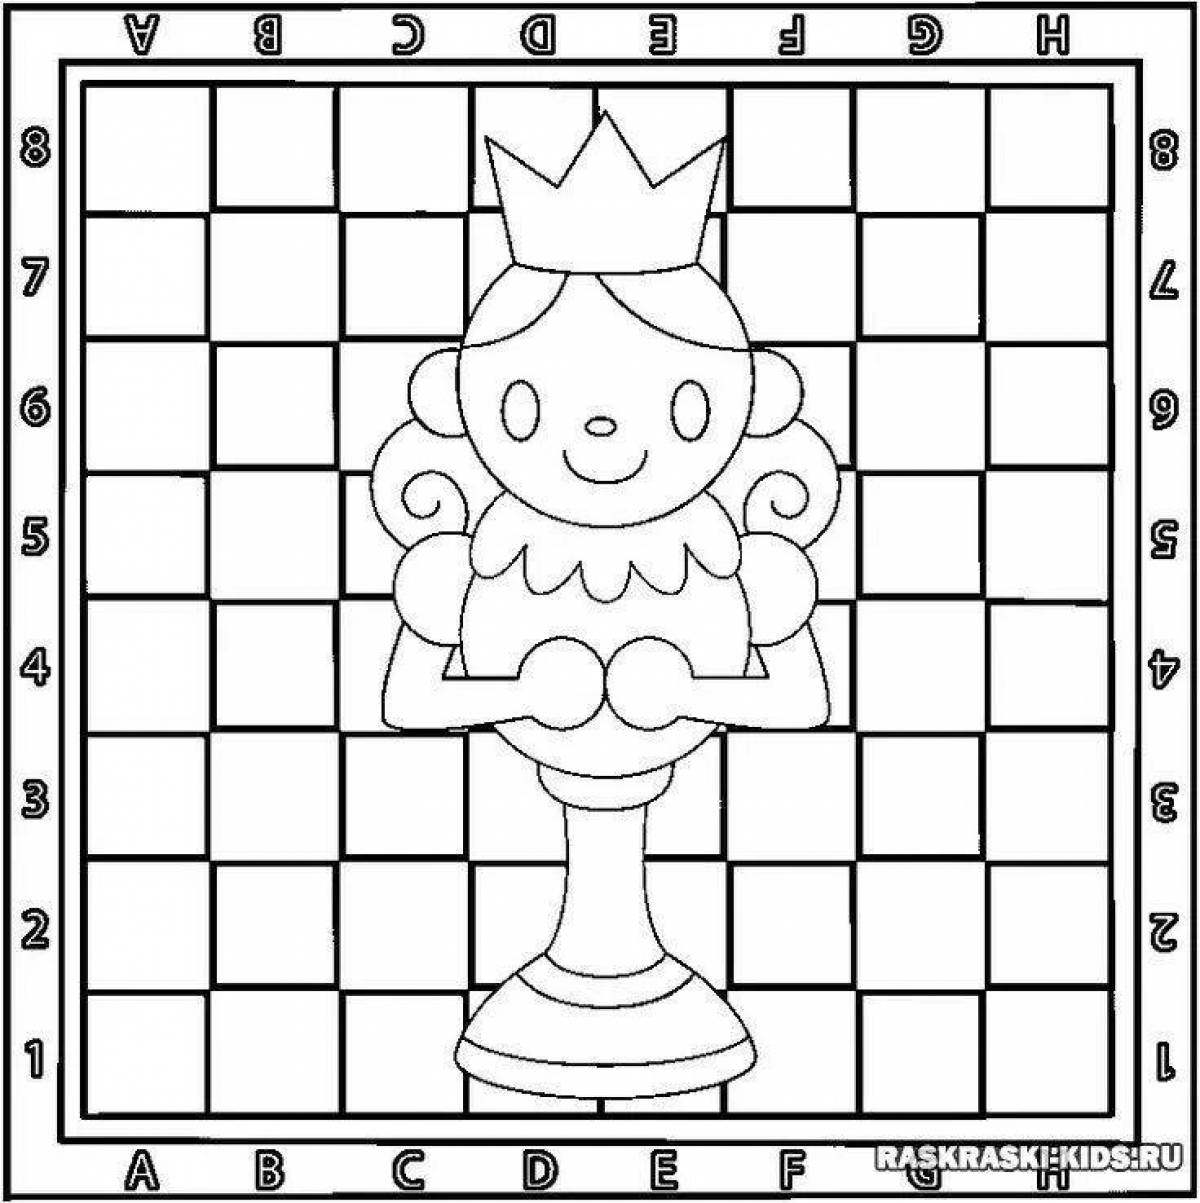 Красочная шахматная раскраска для детей, чтобы выучить правила